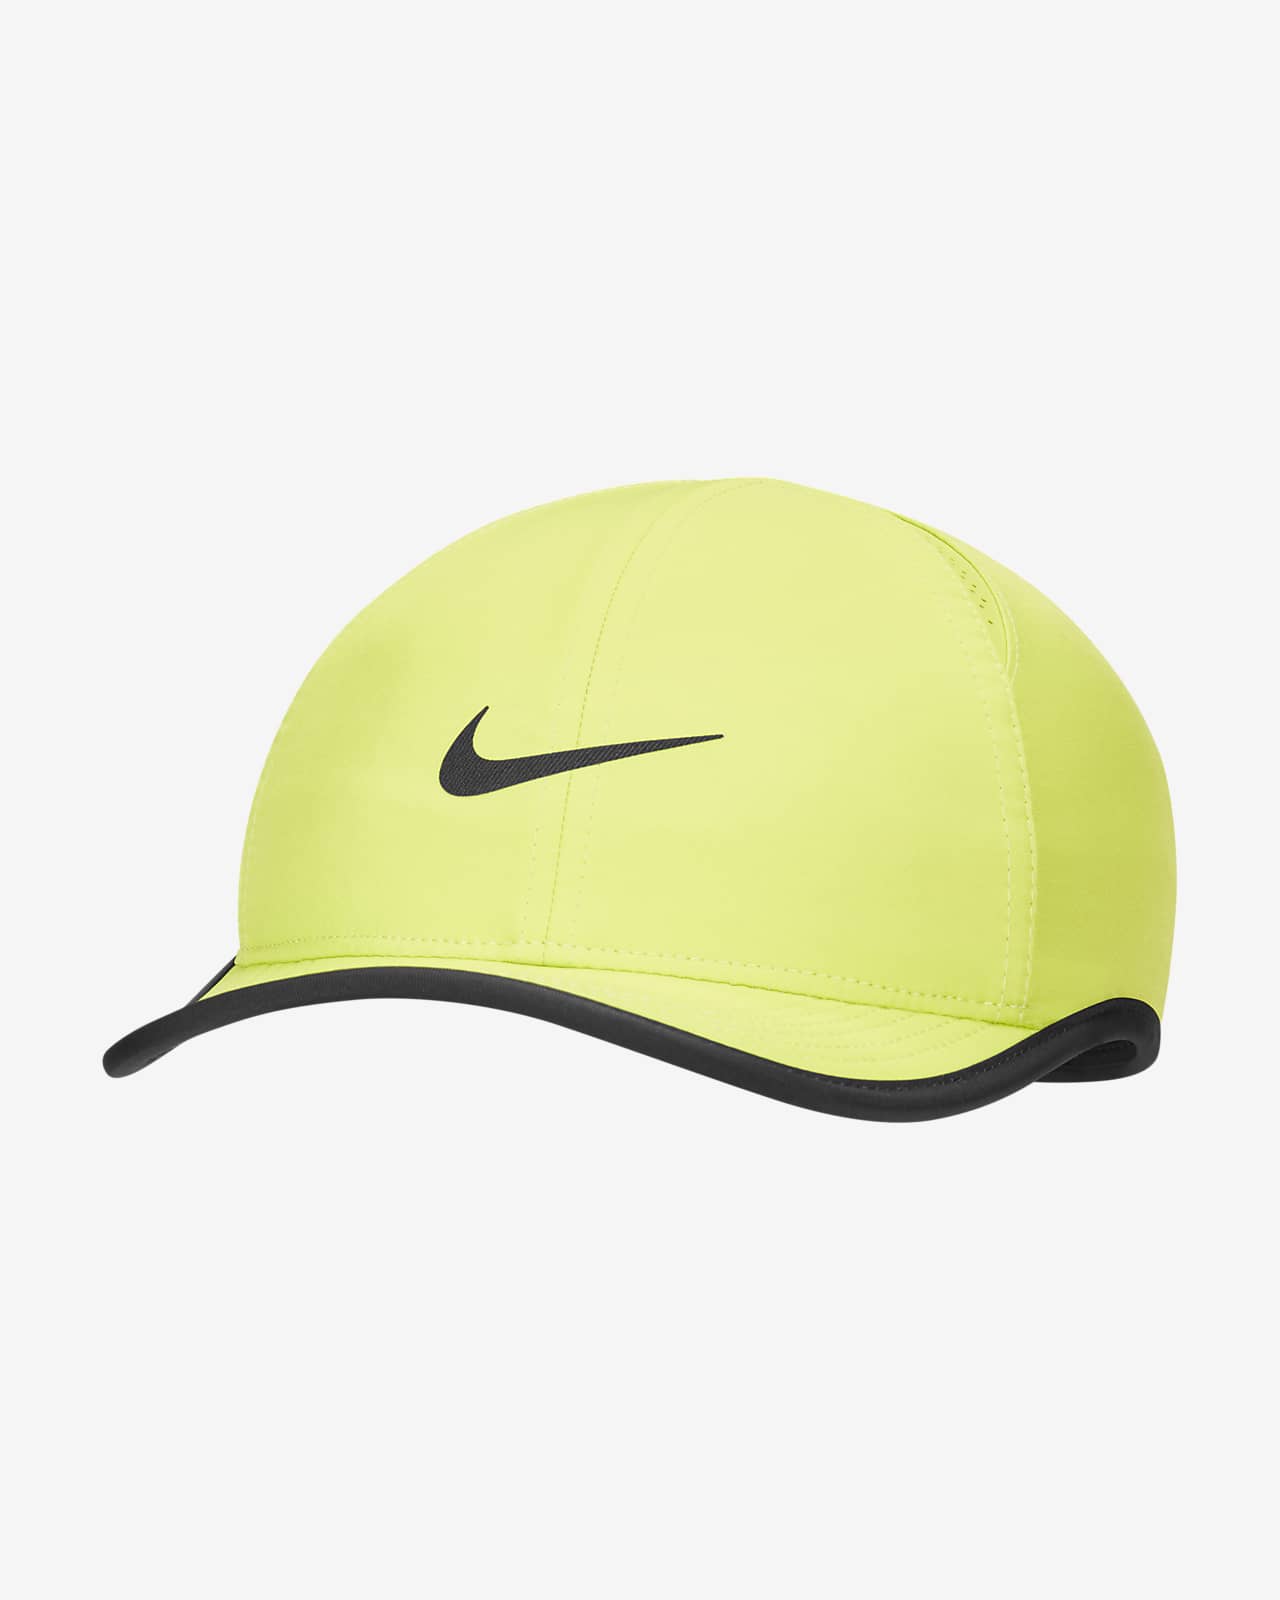 Nike AeroBill Featherlight Kids' Adjustable Hat.